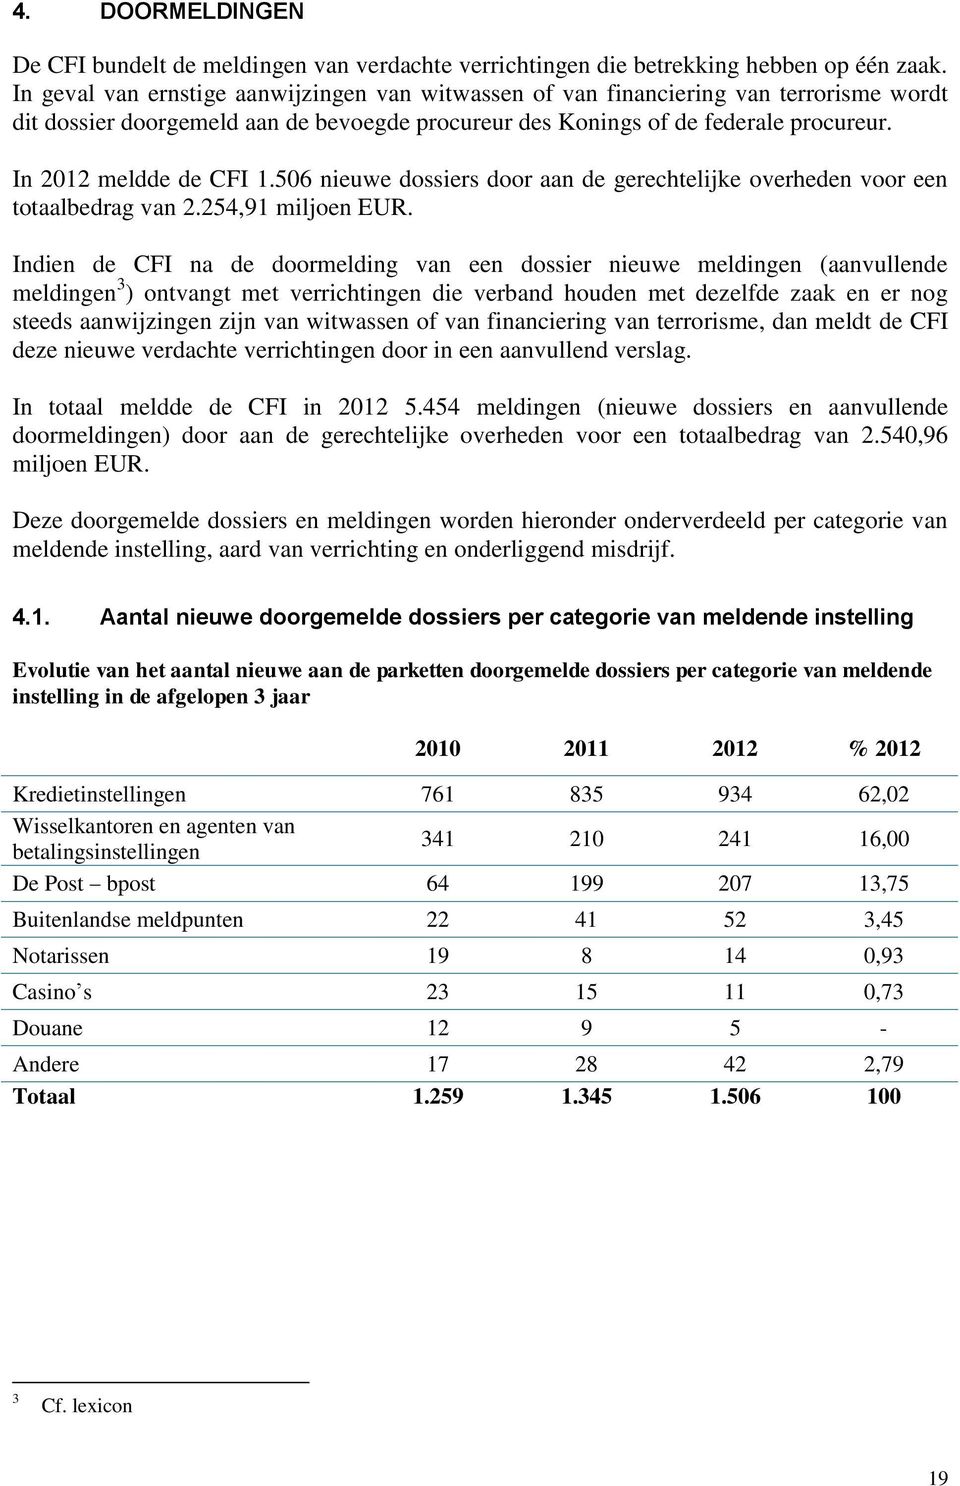 In 2012 meldde de CFI 1.506 nieuwe dossiers door aan de gerechtelijke overheden voor een totaalbedrag van 2.254,91 miljoen EUR.